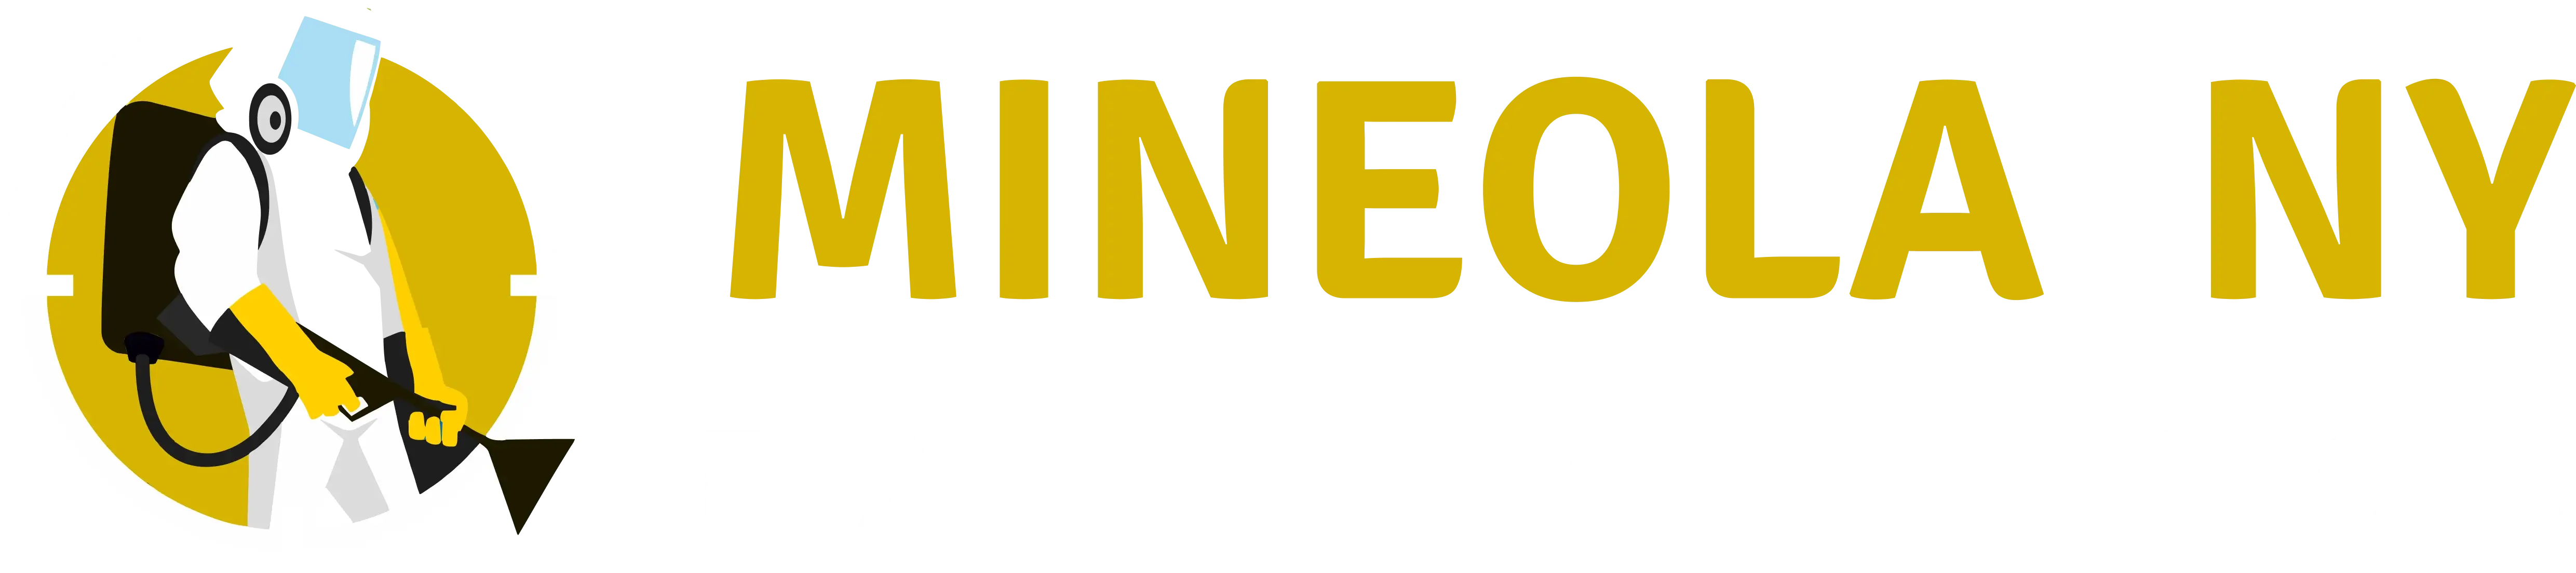 mineolany logo